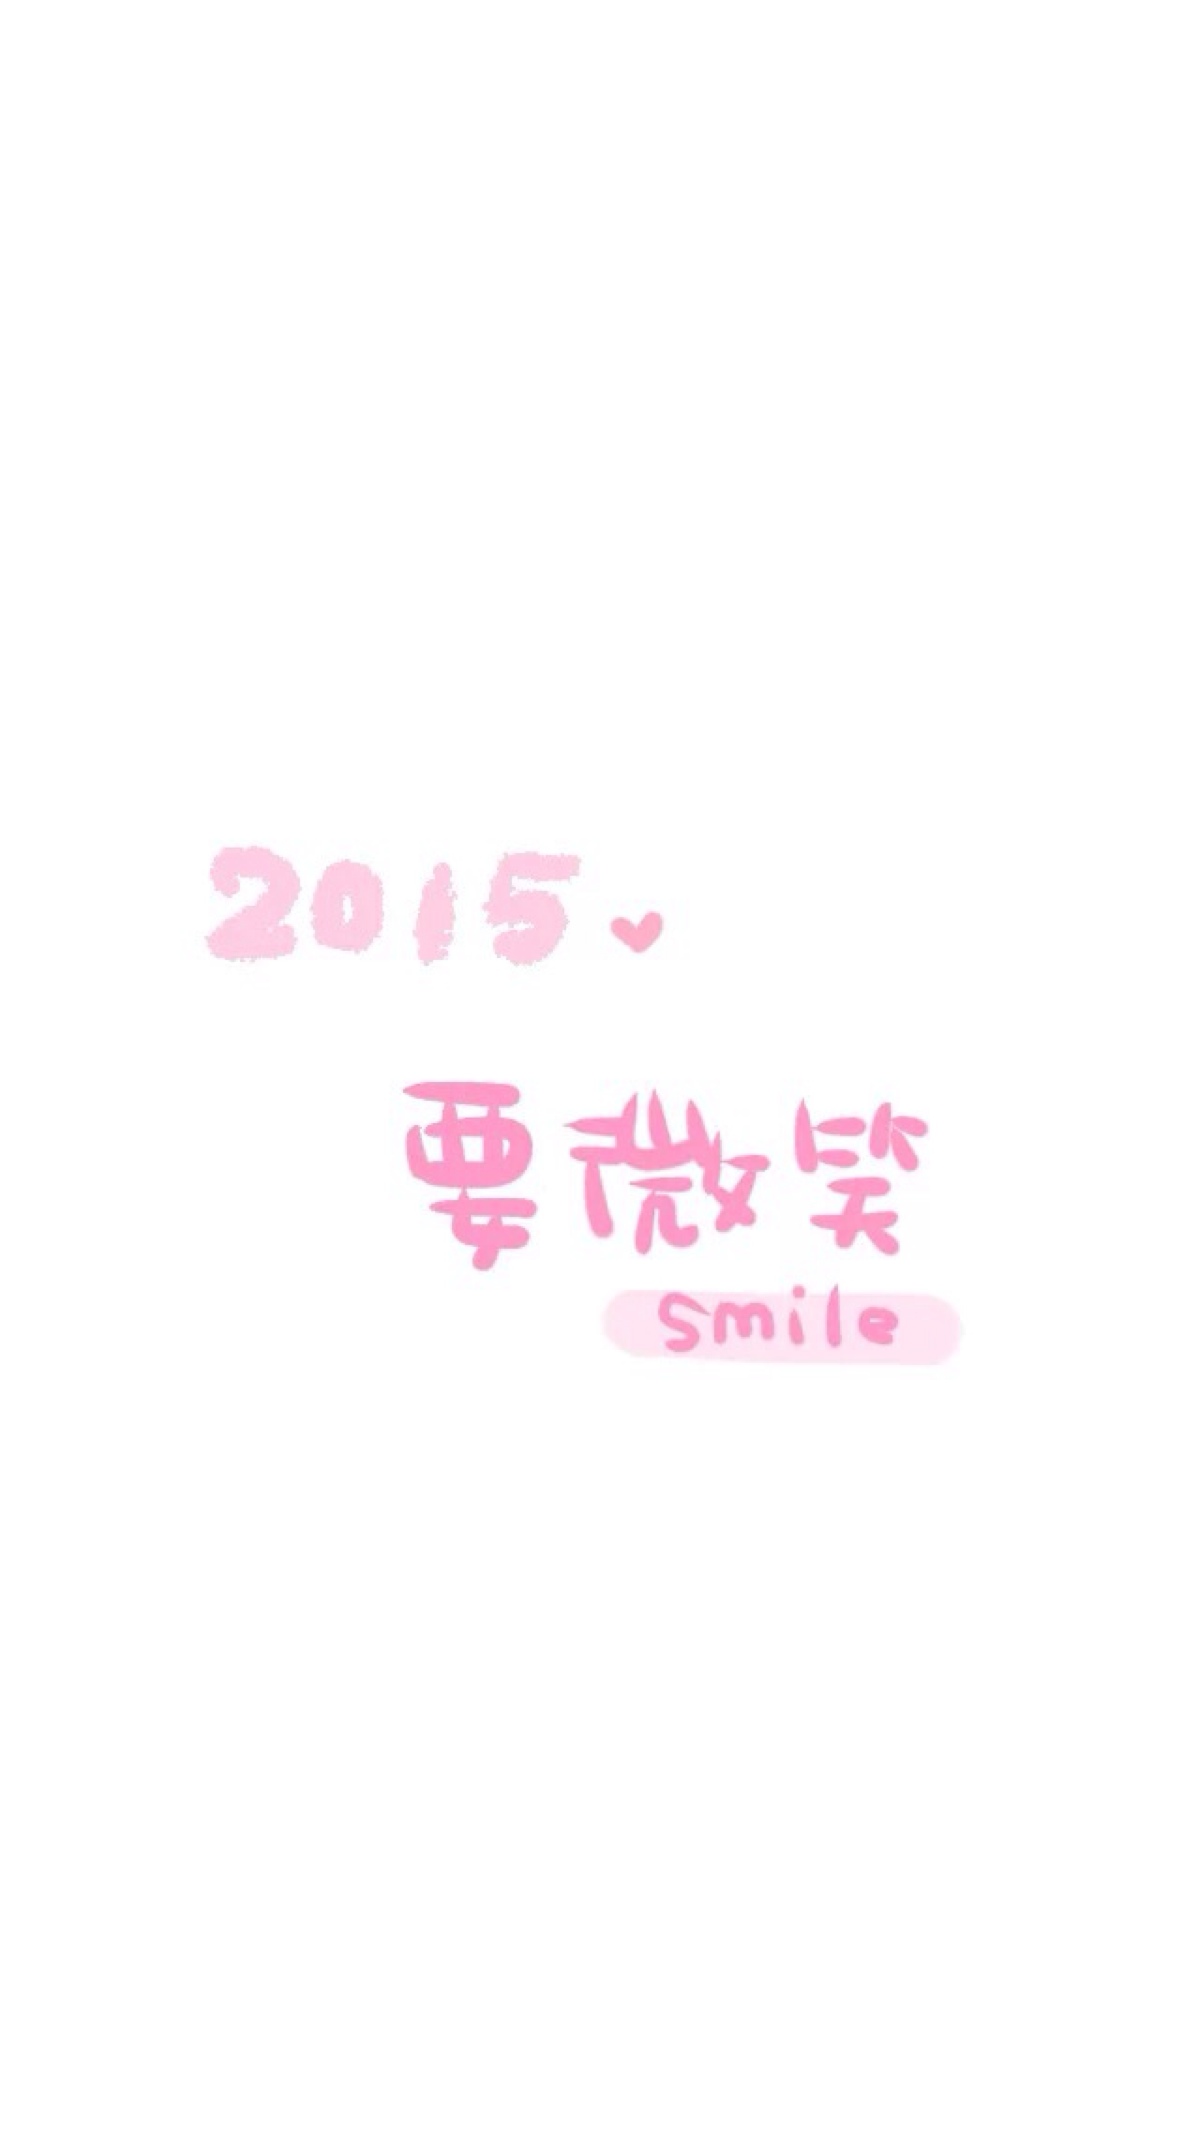 2015 愿望 手写句子 文字壁纸 晚安荼蘼 微笑